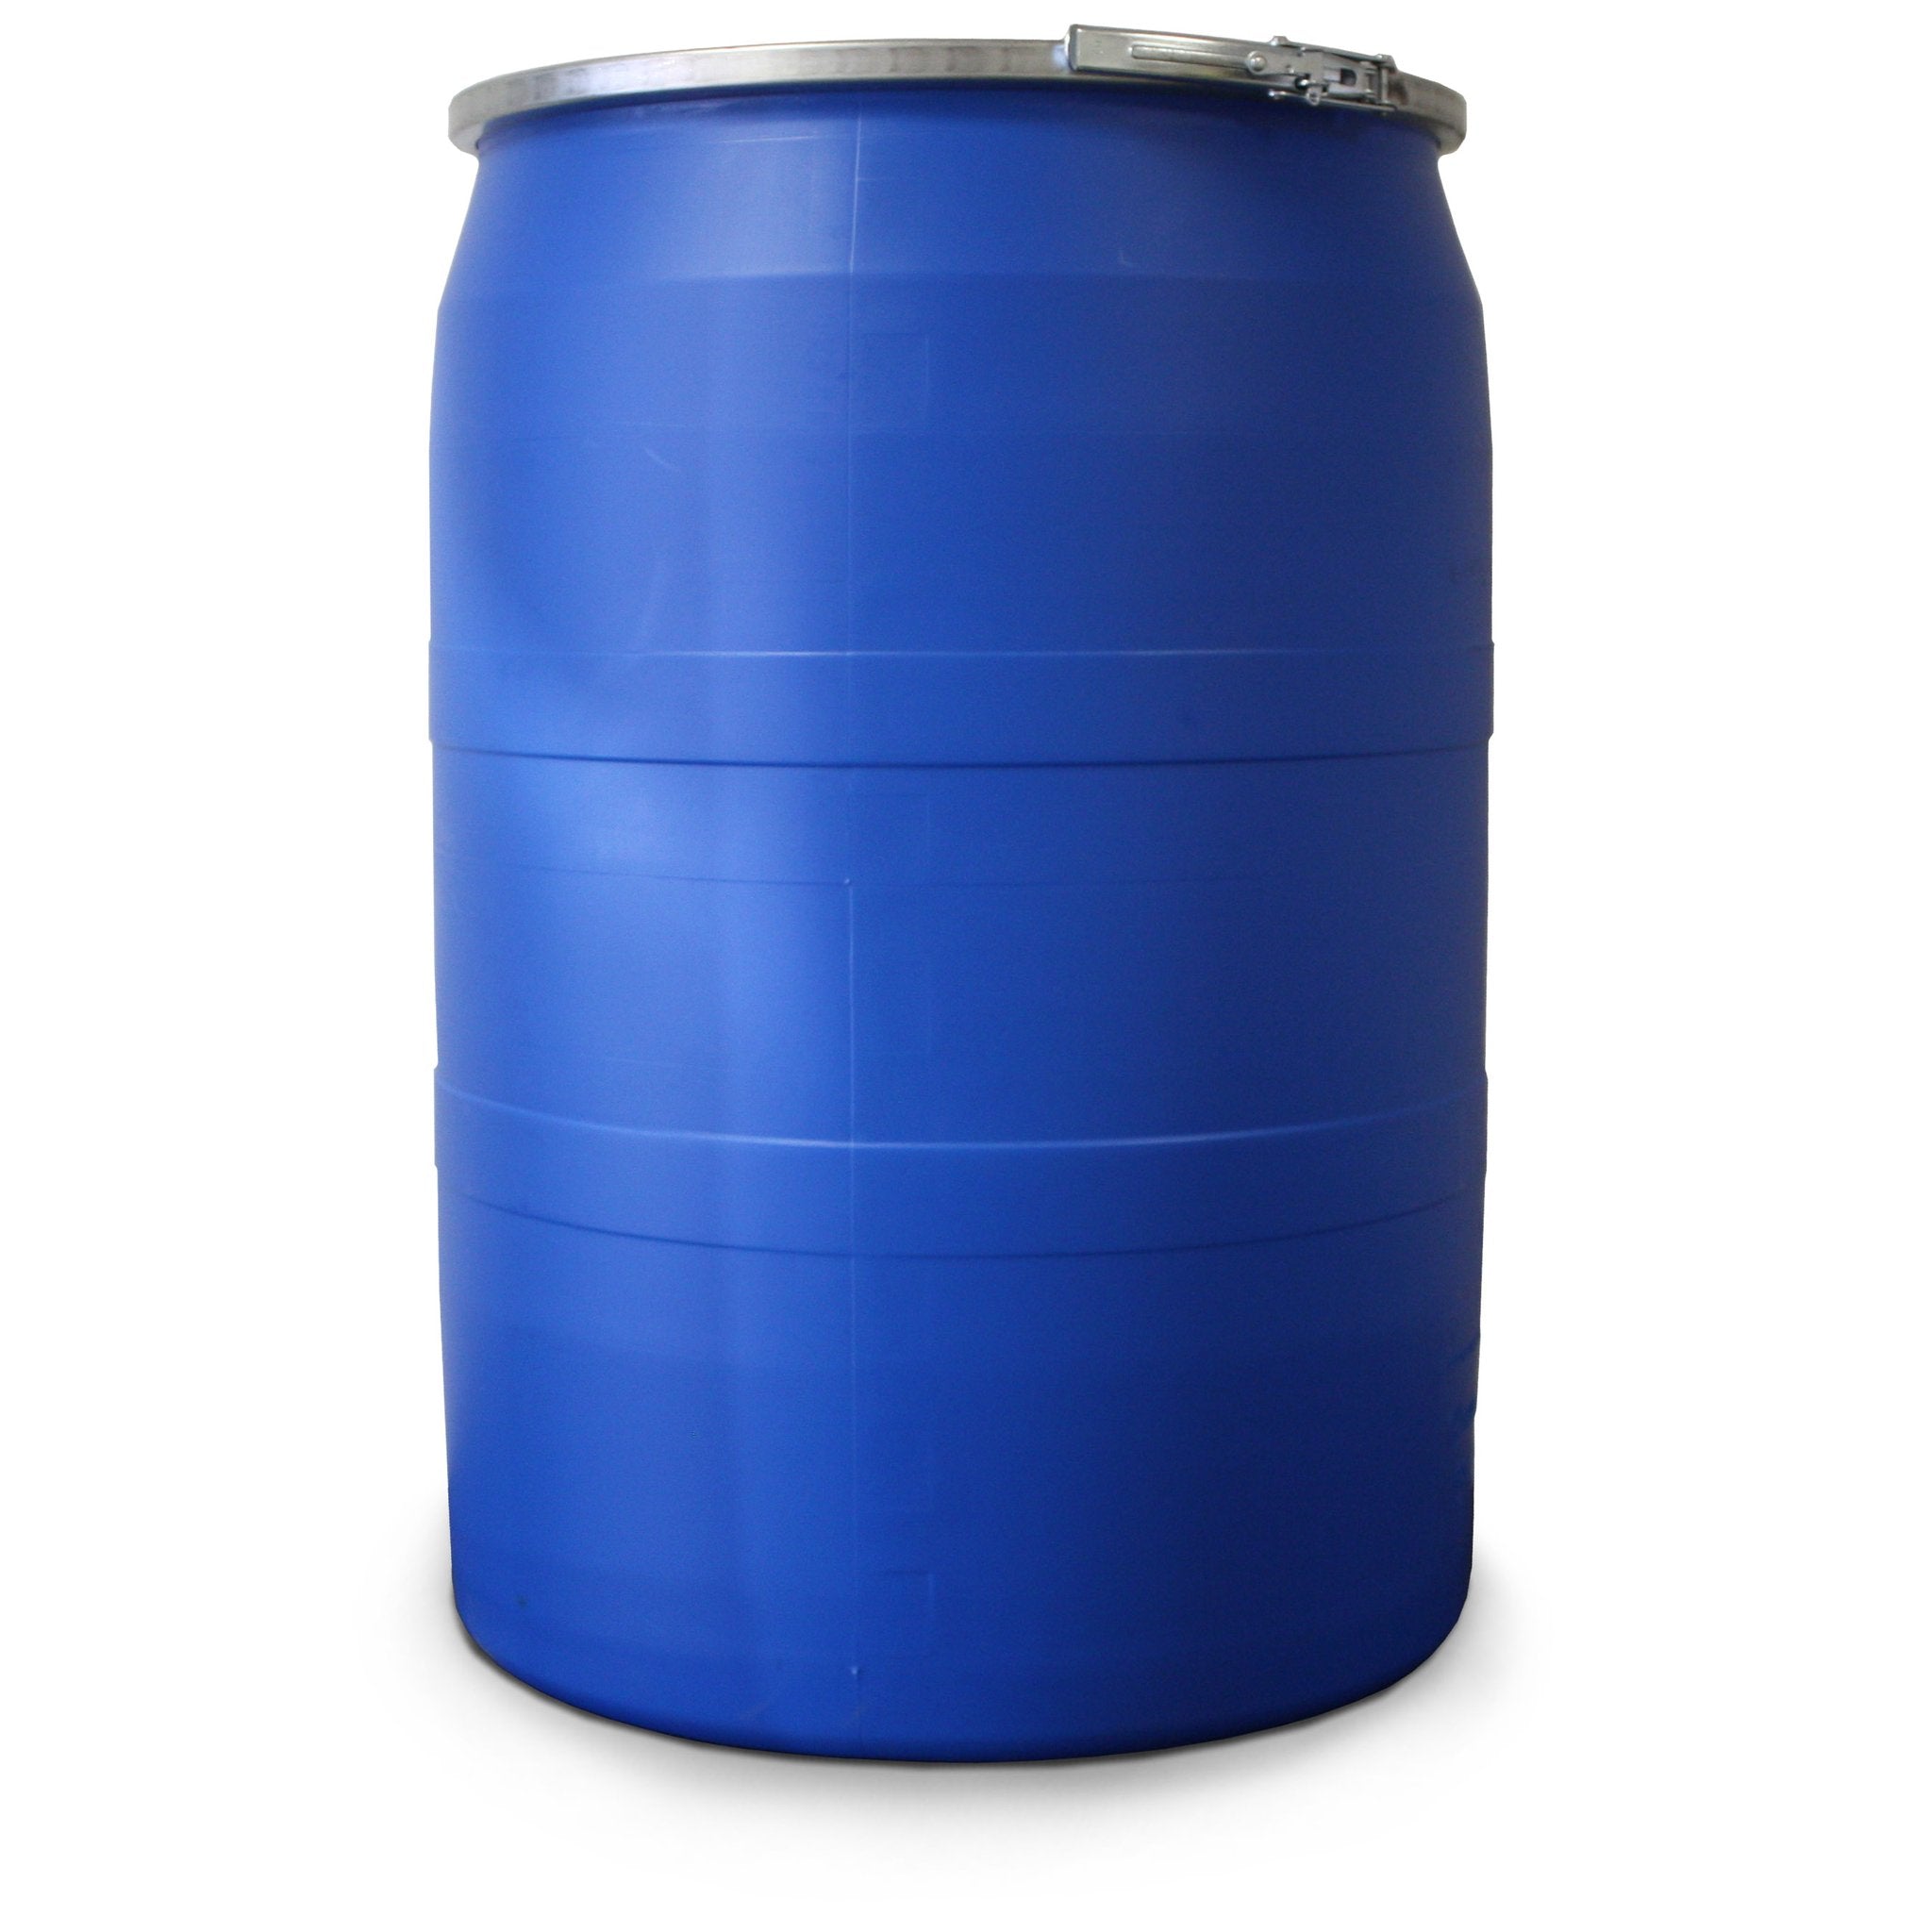 XSORB Oil Select 55 gal Drum - 1 DRUM